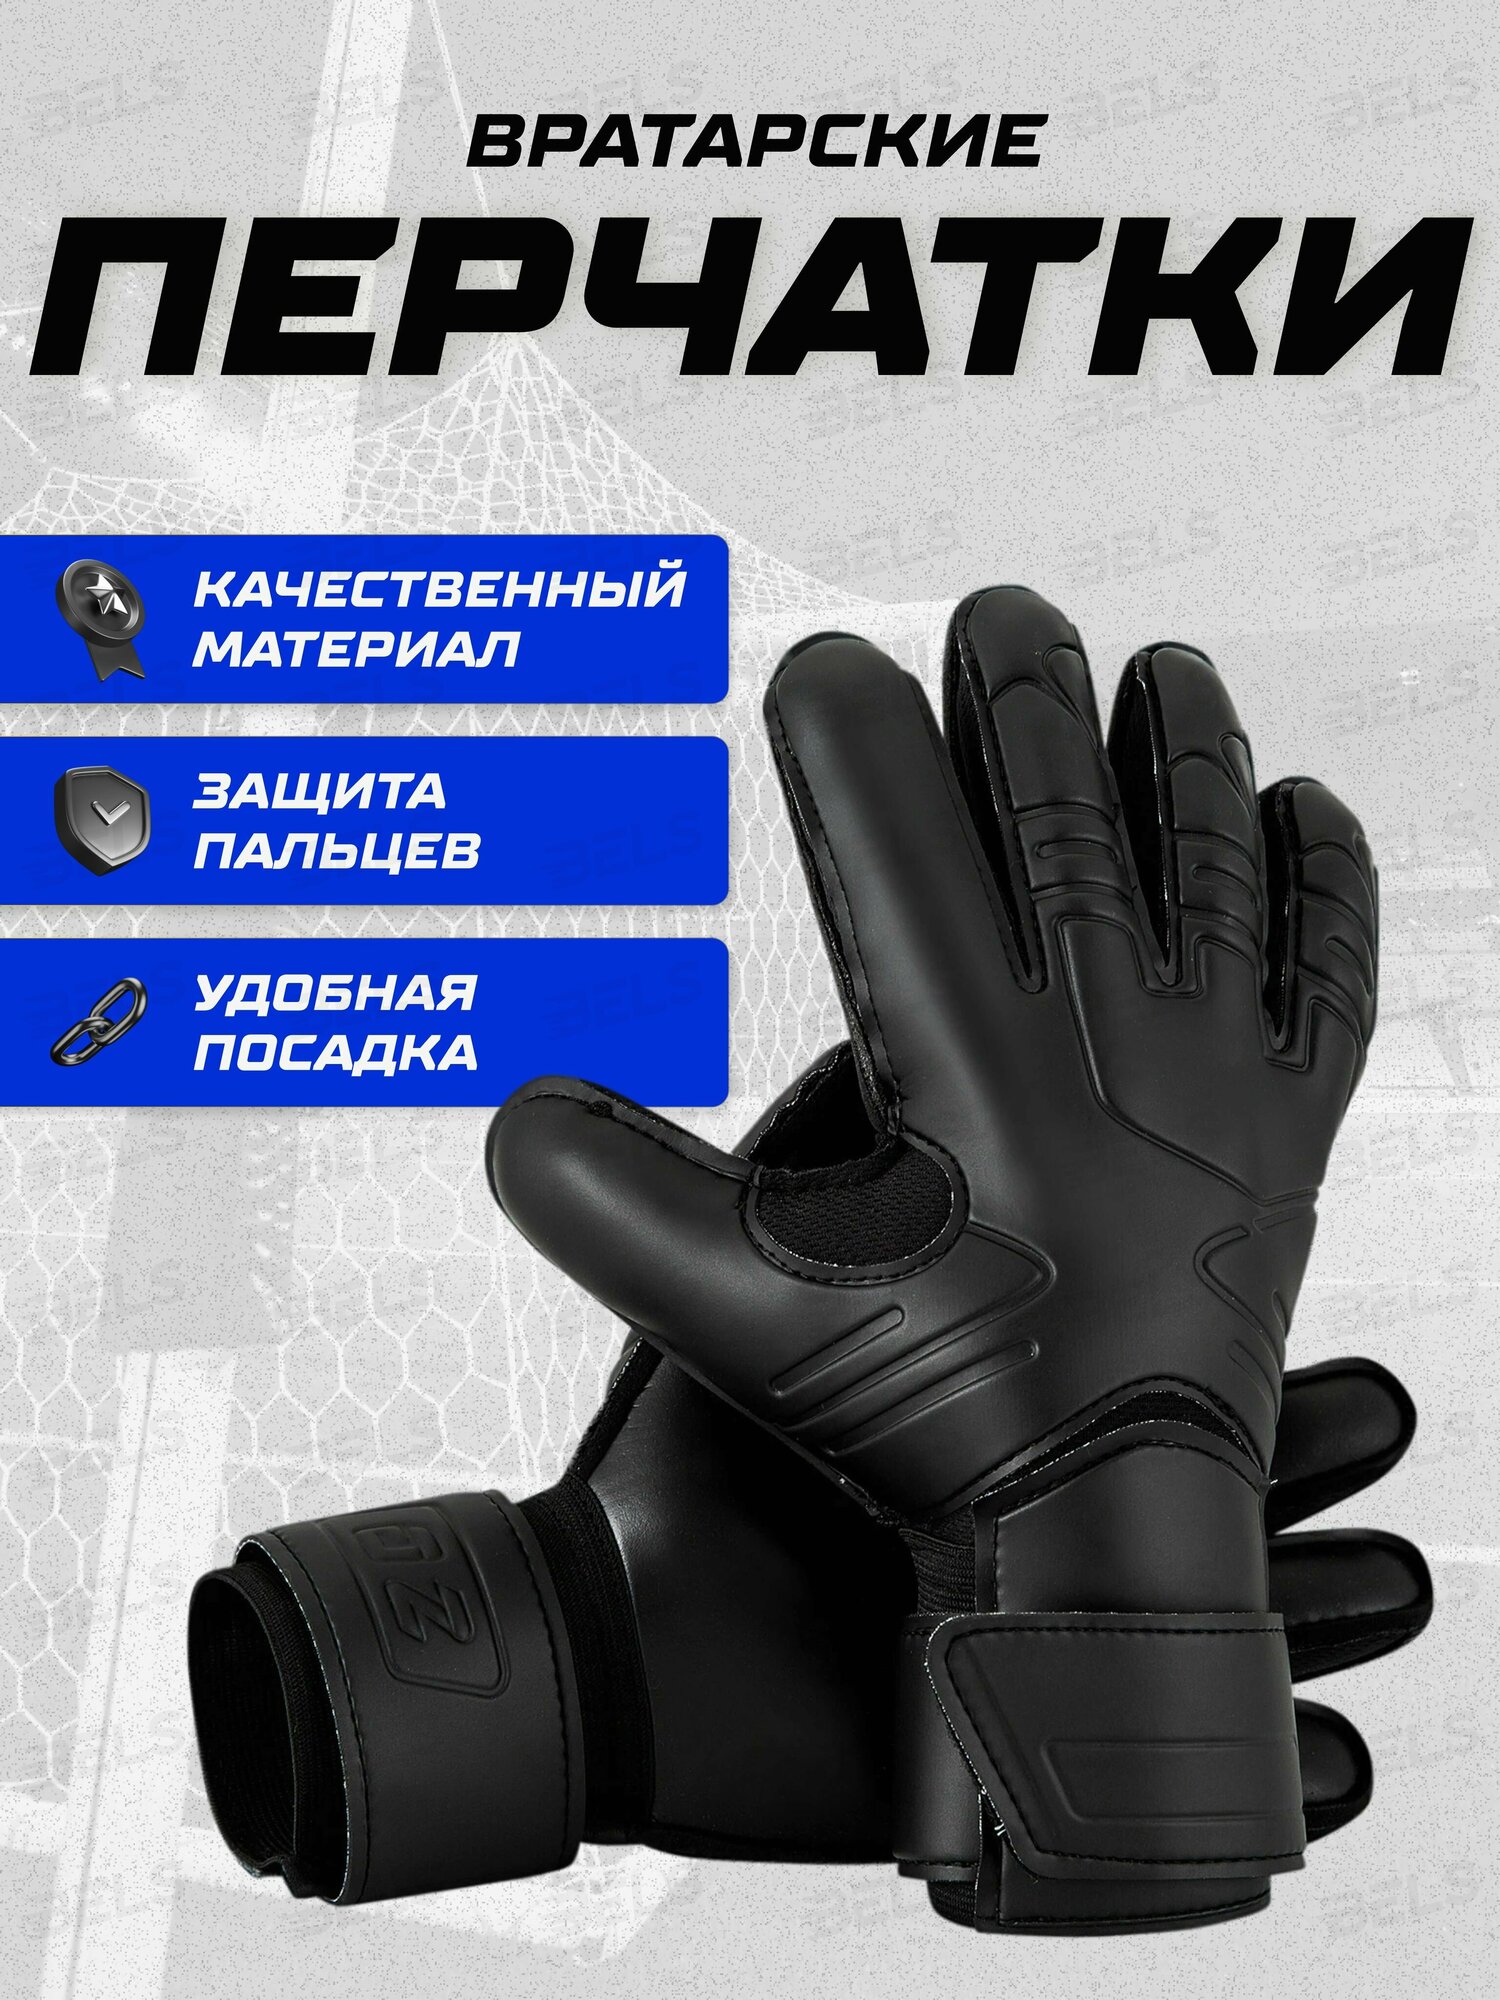 Вратарские перчатки для взрослых и детей, футбольные перчатки, размер 7